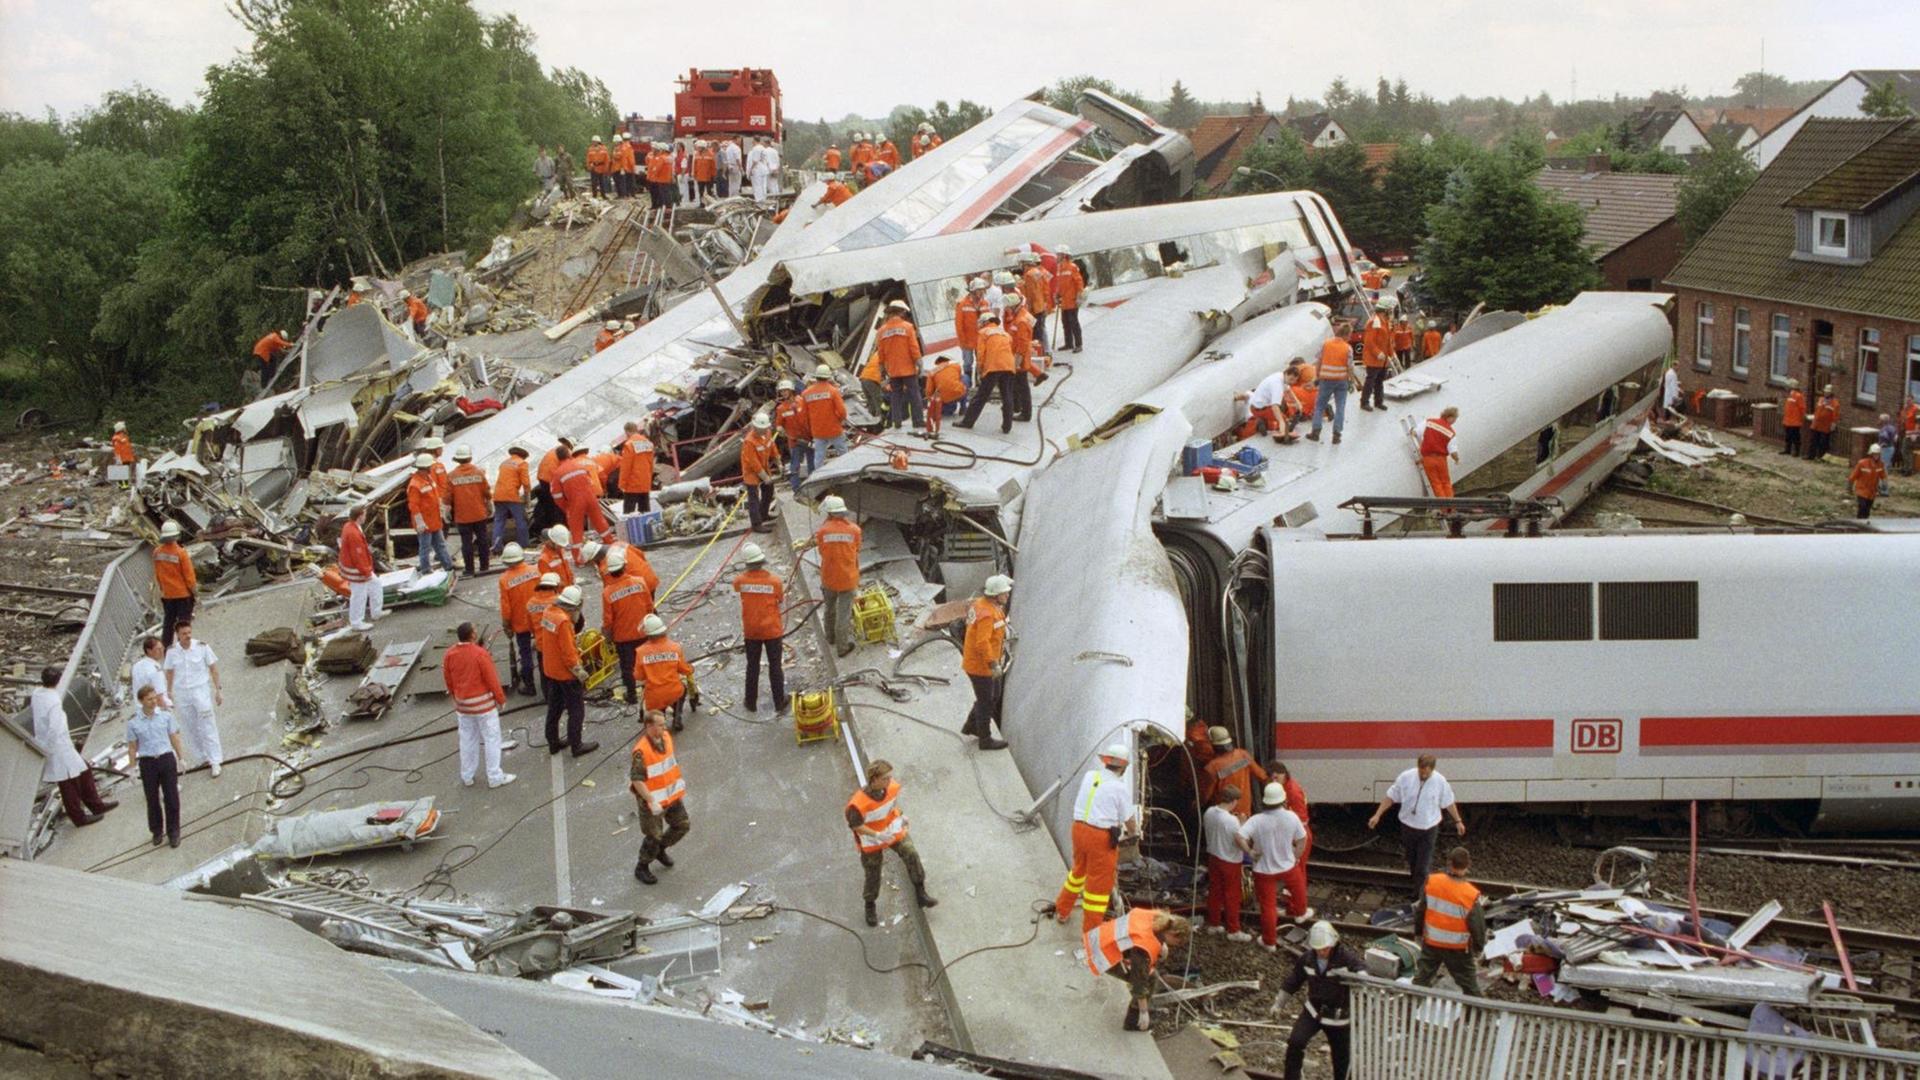 An einer durch einen Intercity-Zug total zerstörten Straßenbrücke in Eschede liegen am 3.6.1998 die verunglückten Waggons kreuz und quer.